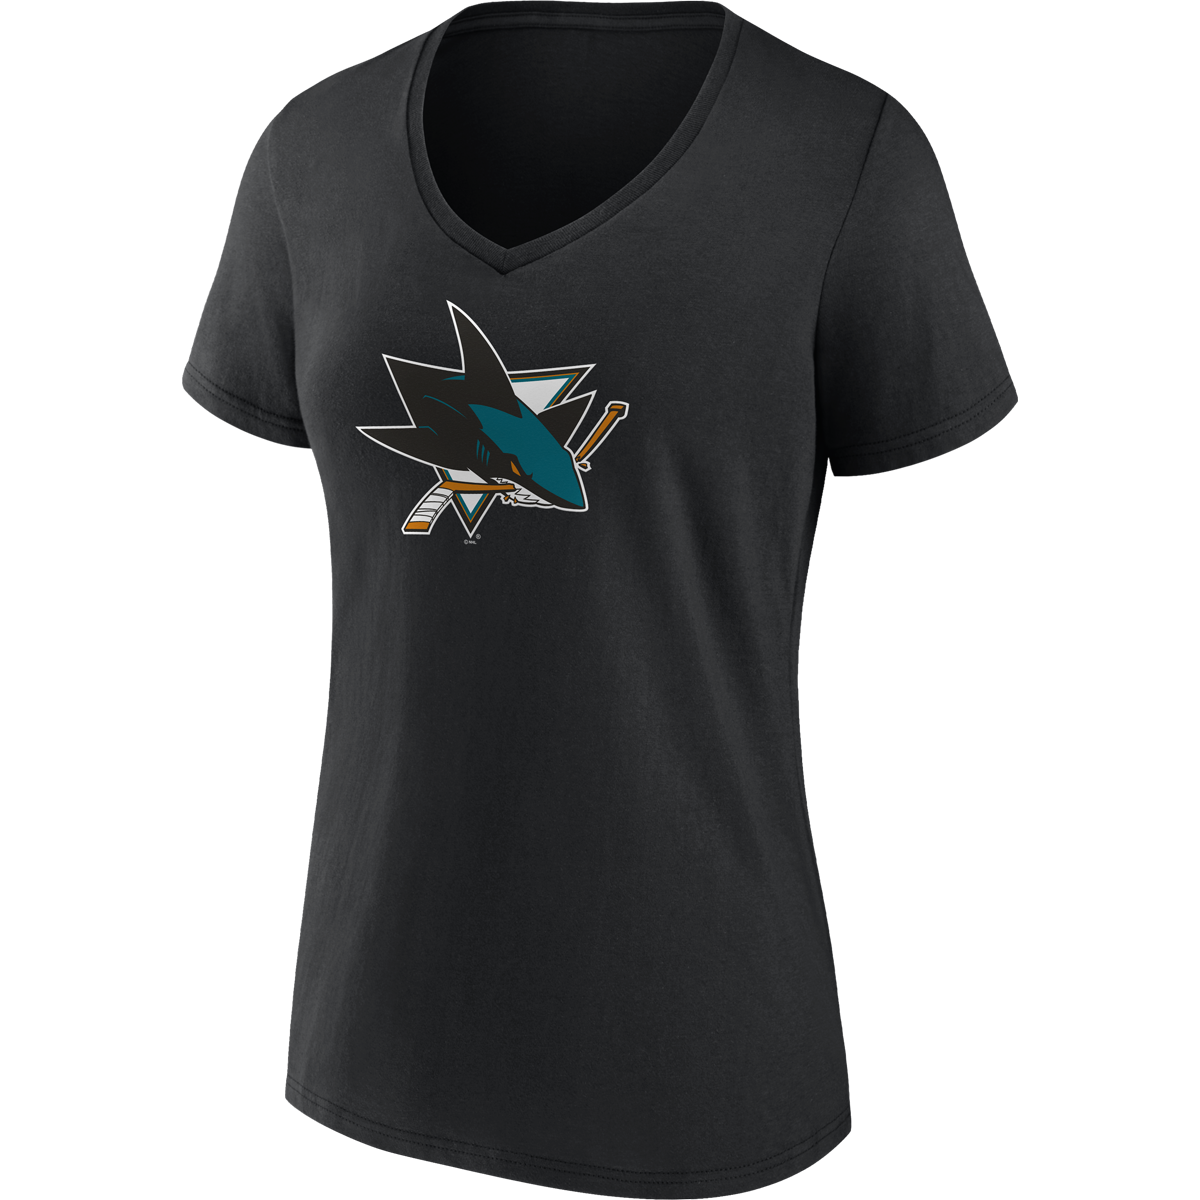 Women's Sharks Team Logo Short Sleeve V-Neck alternate view